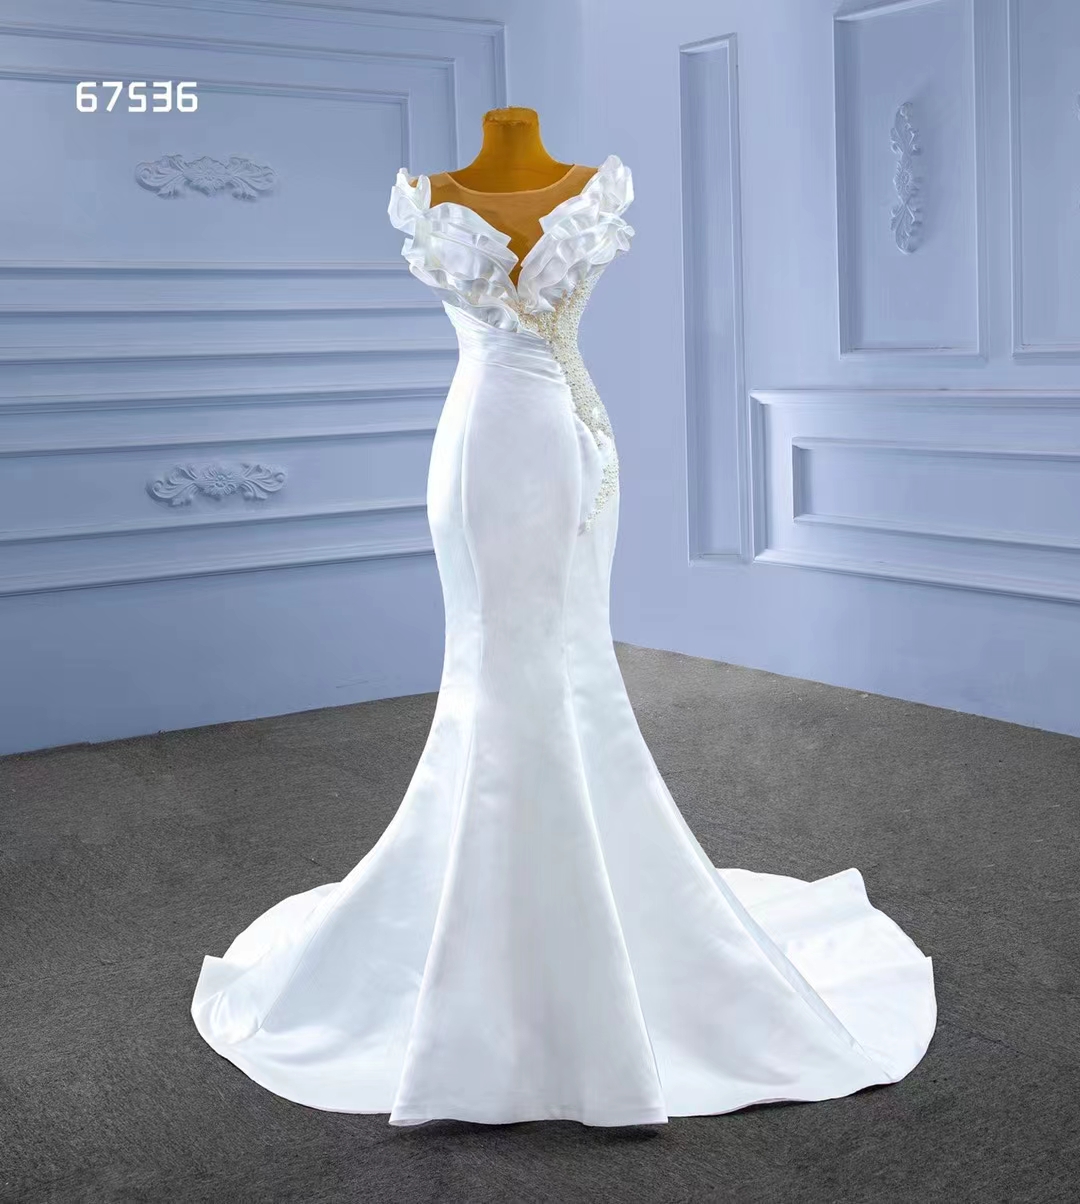 Vestido de novia sirena Sexy satén suave blanco diseño de tendencia abalorios parciales SM67536